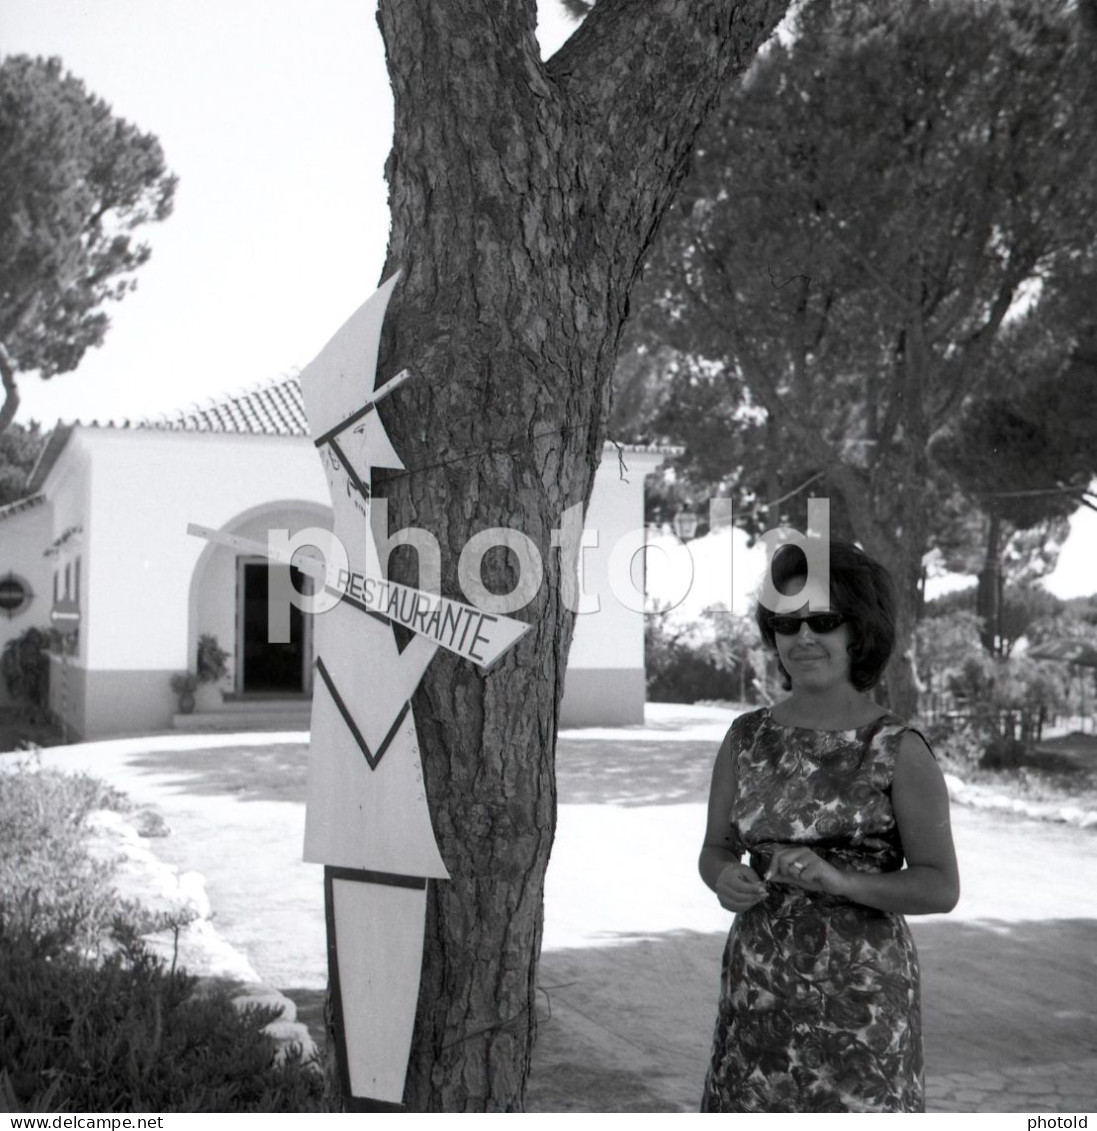 6 NEGATIVES SET 1963 WOMAN FEMME SWIMSUIT MAILLOT BEACH PLAGE ORIGINAL AMATEUR 60/60mm NEGATIVE NOT PHOTO FOTO - Non Classificati